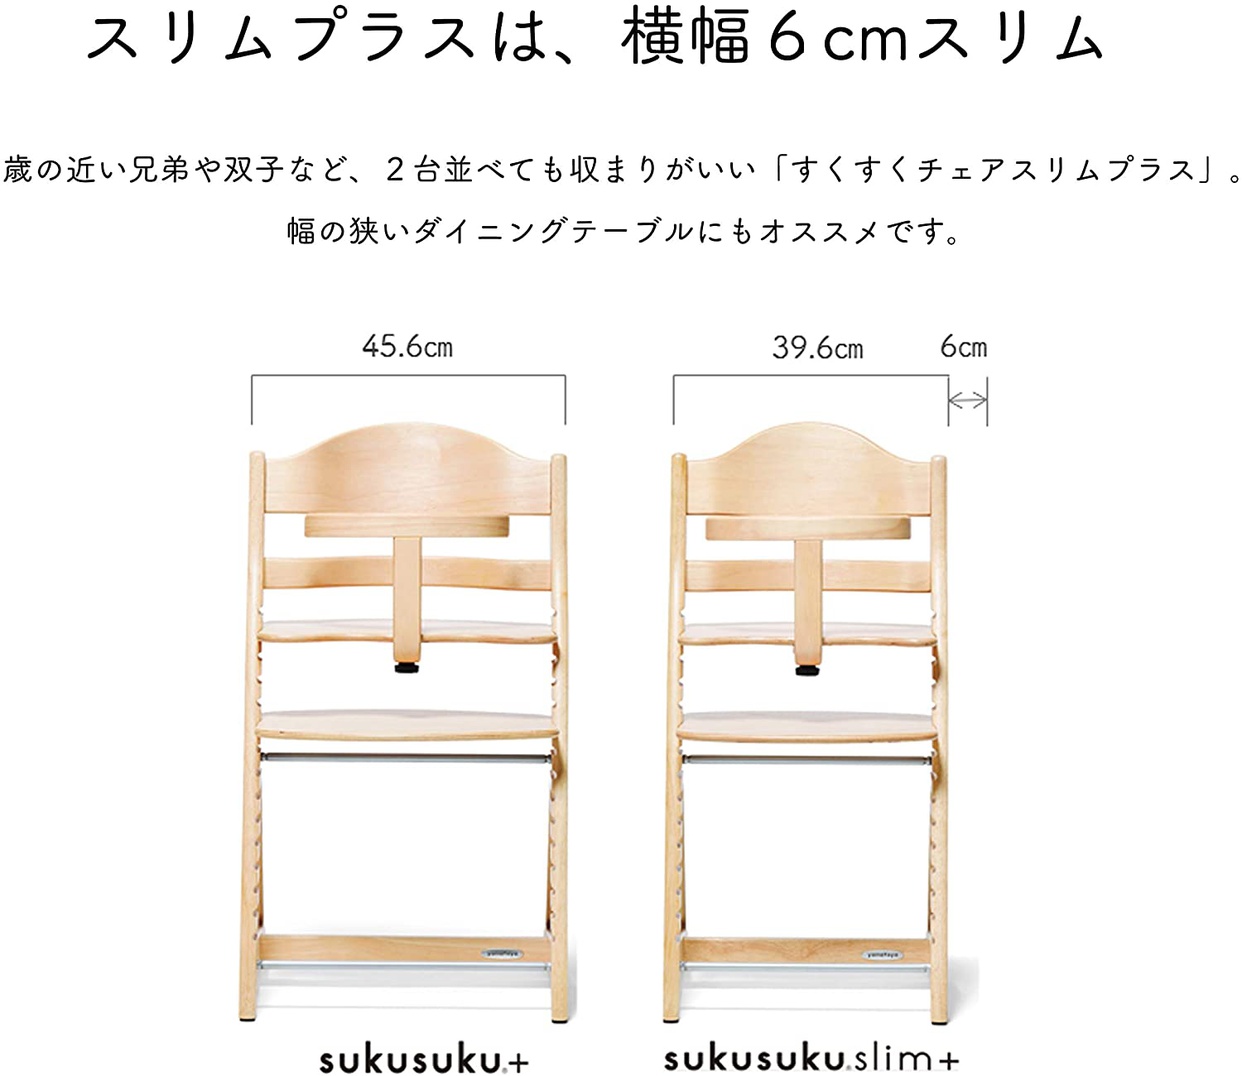 大和屋(yamatoya) すくすくチェア スリムプラス テーブル付の商品画像6 